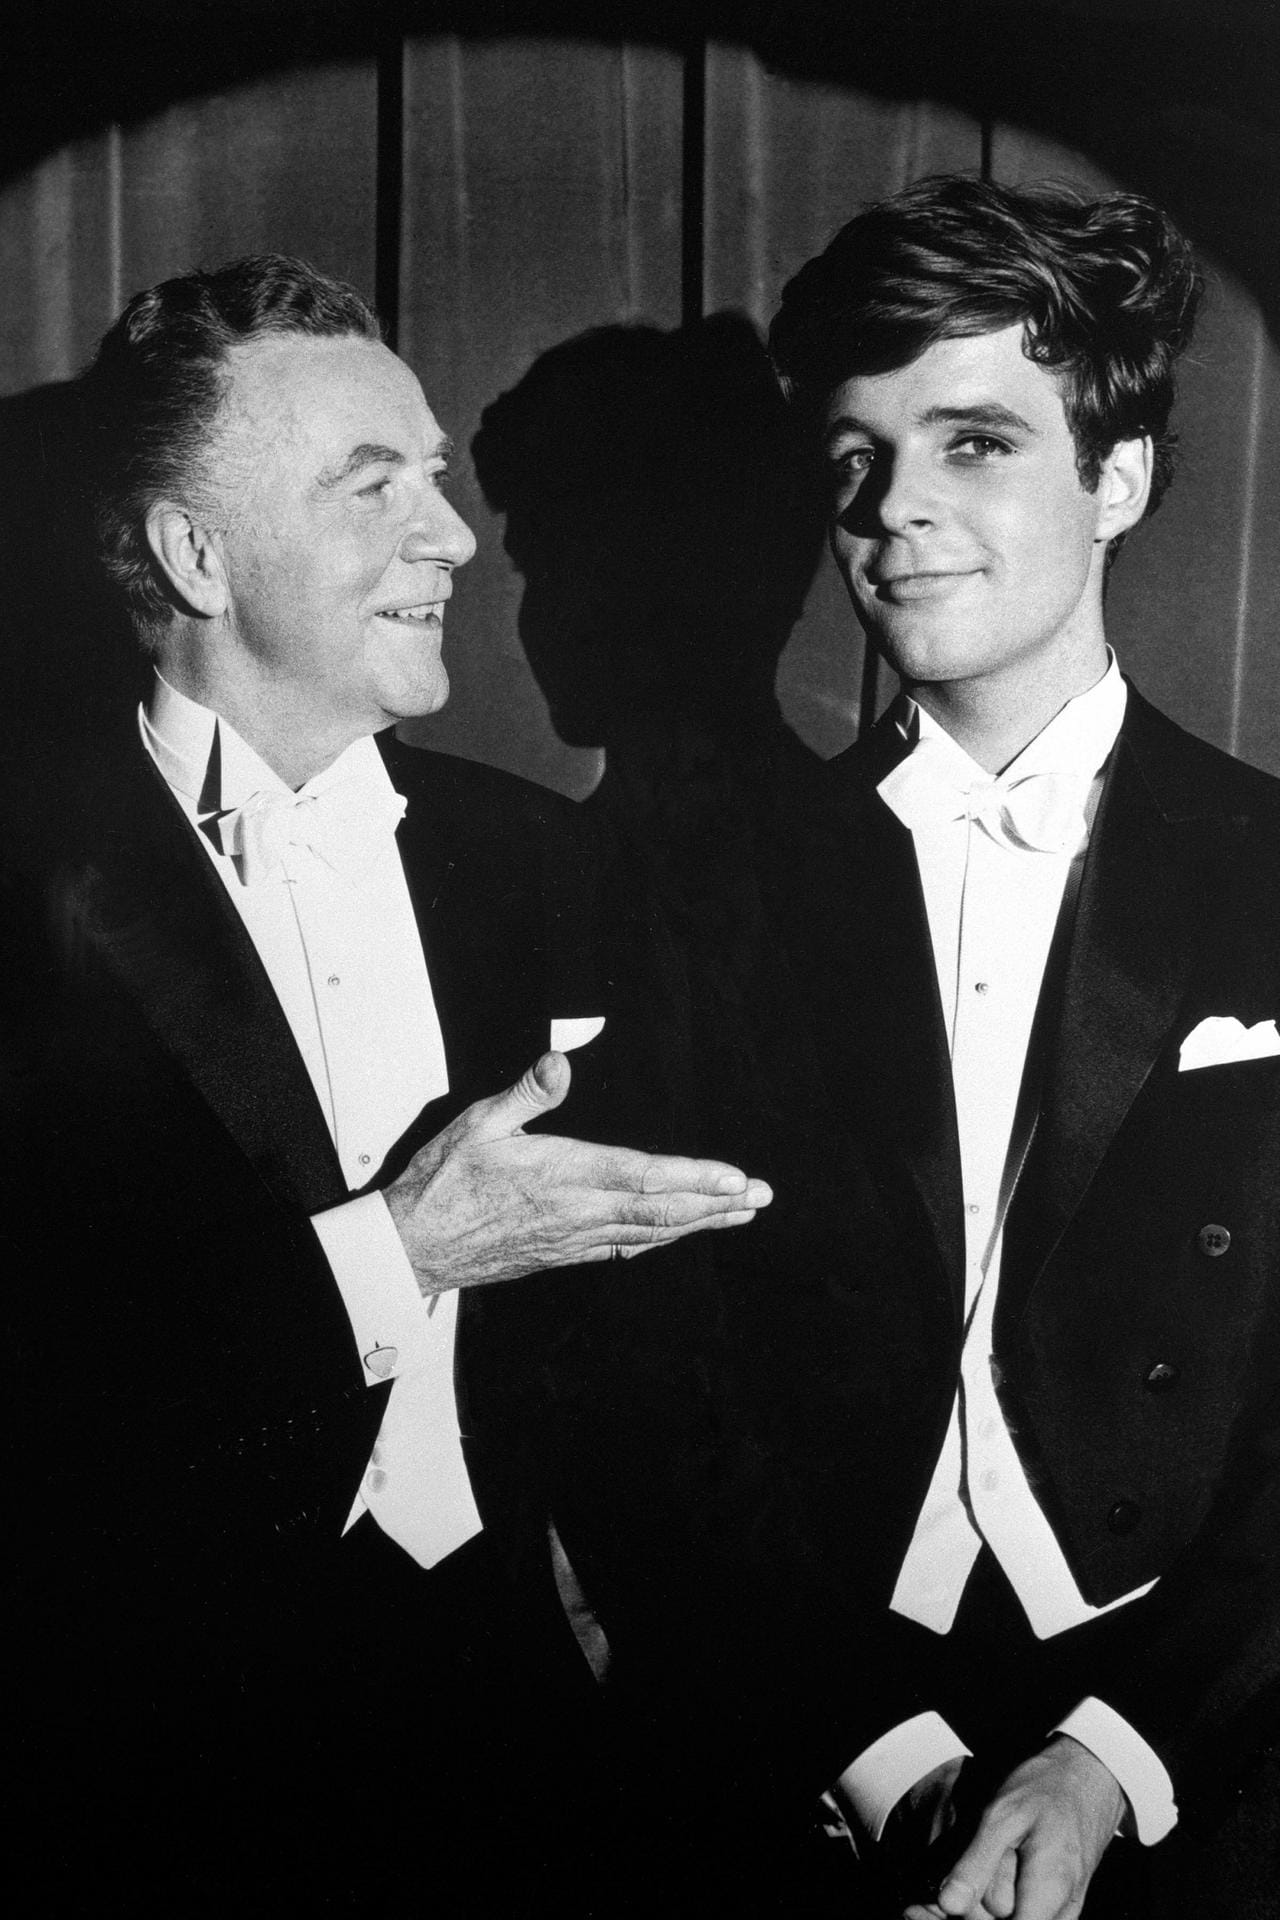 In "Das habe ich von Papa gelernt" spielte der Schauspieler 1964 tatsächlich an der Seite seines Vaters Willy Fritsch.